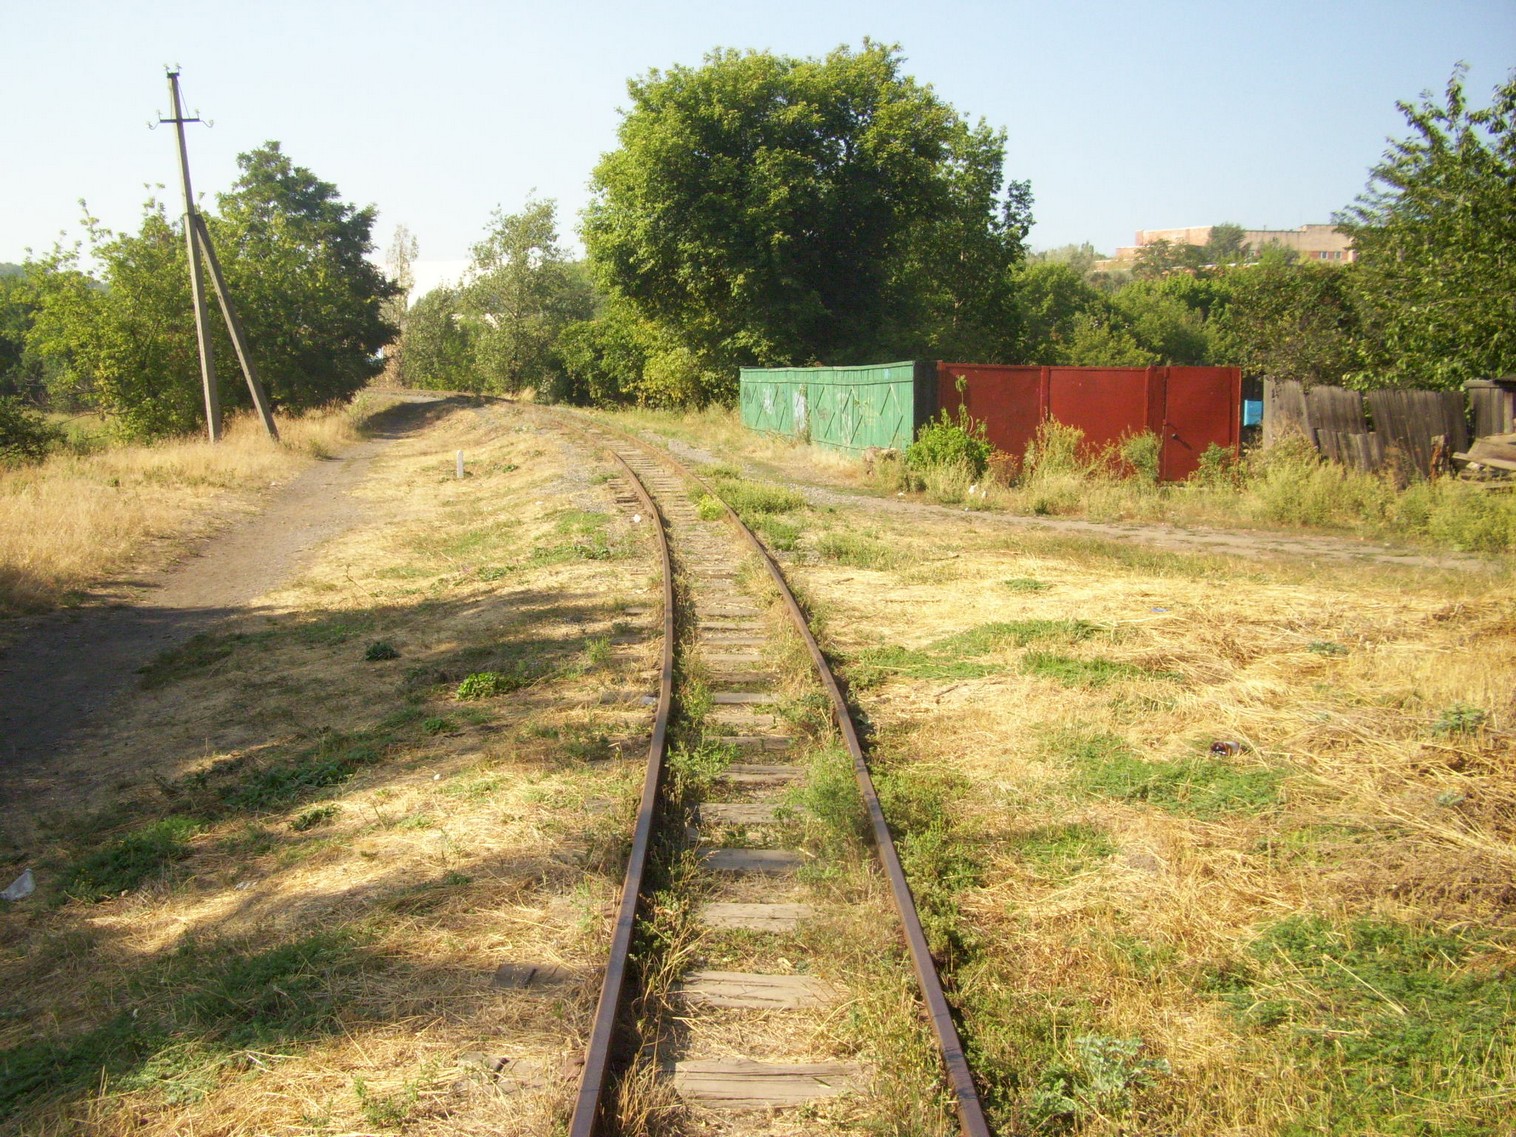 Донецкая детская железная дорога  —  фотографии, сделанные в 2010 году (часть 3)